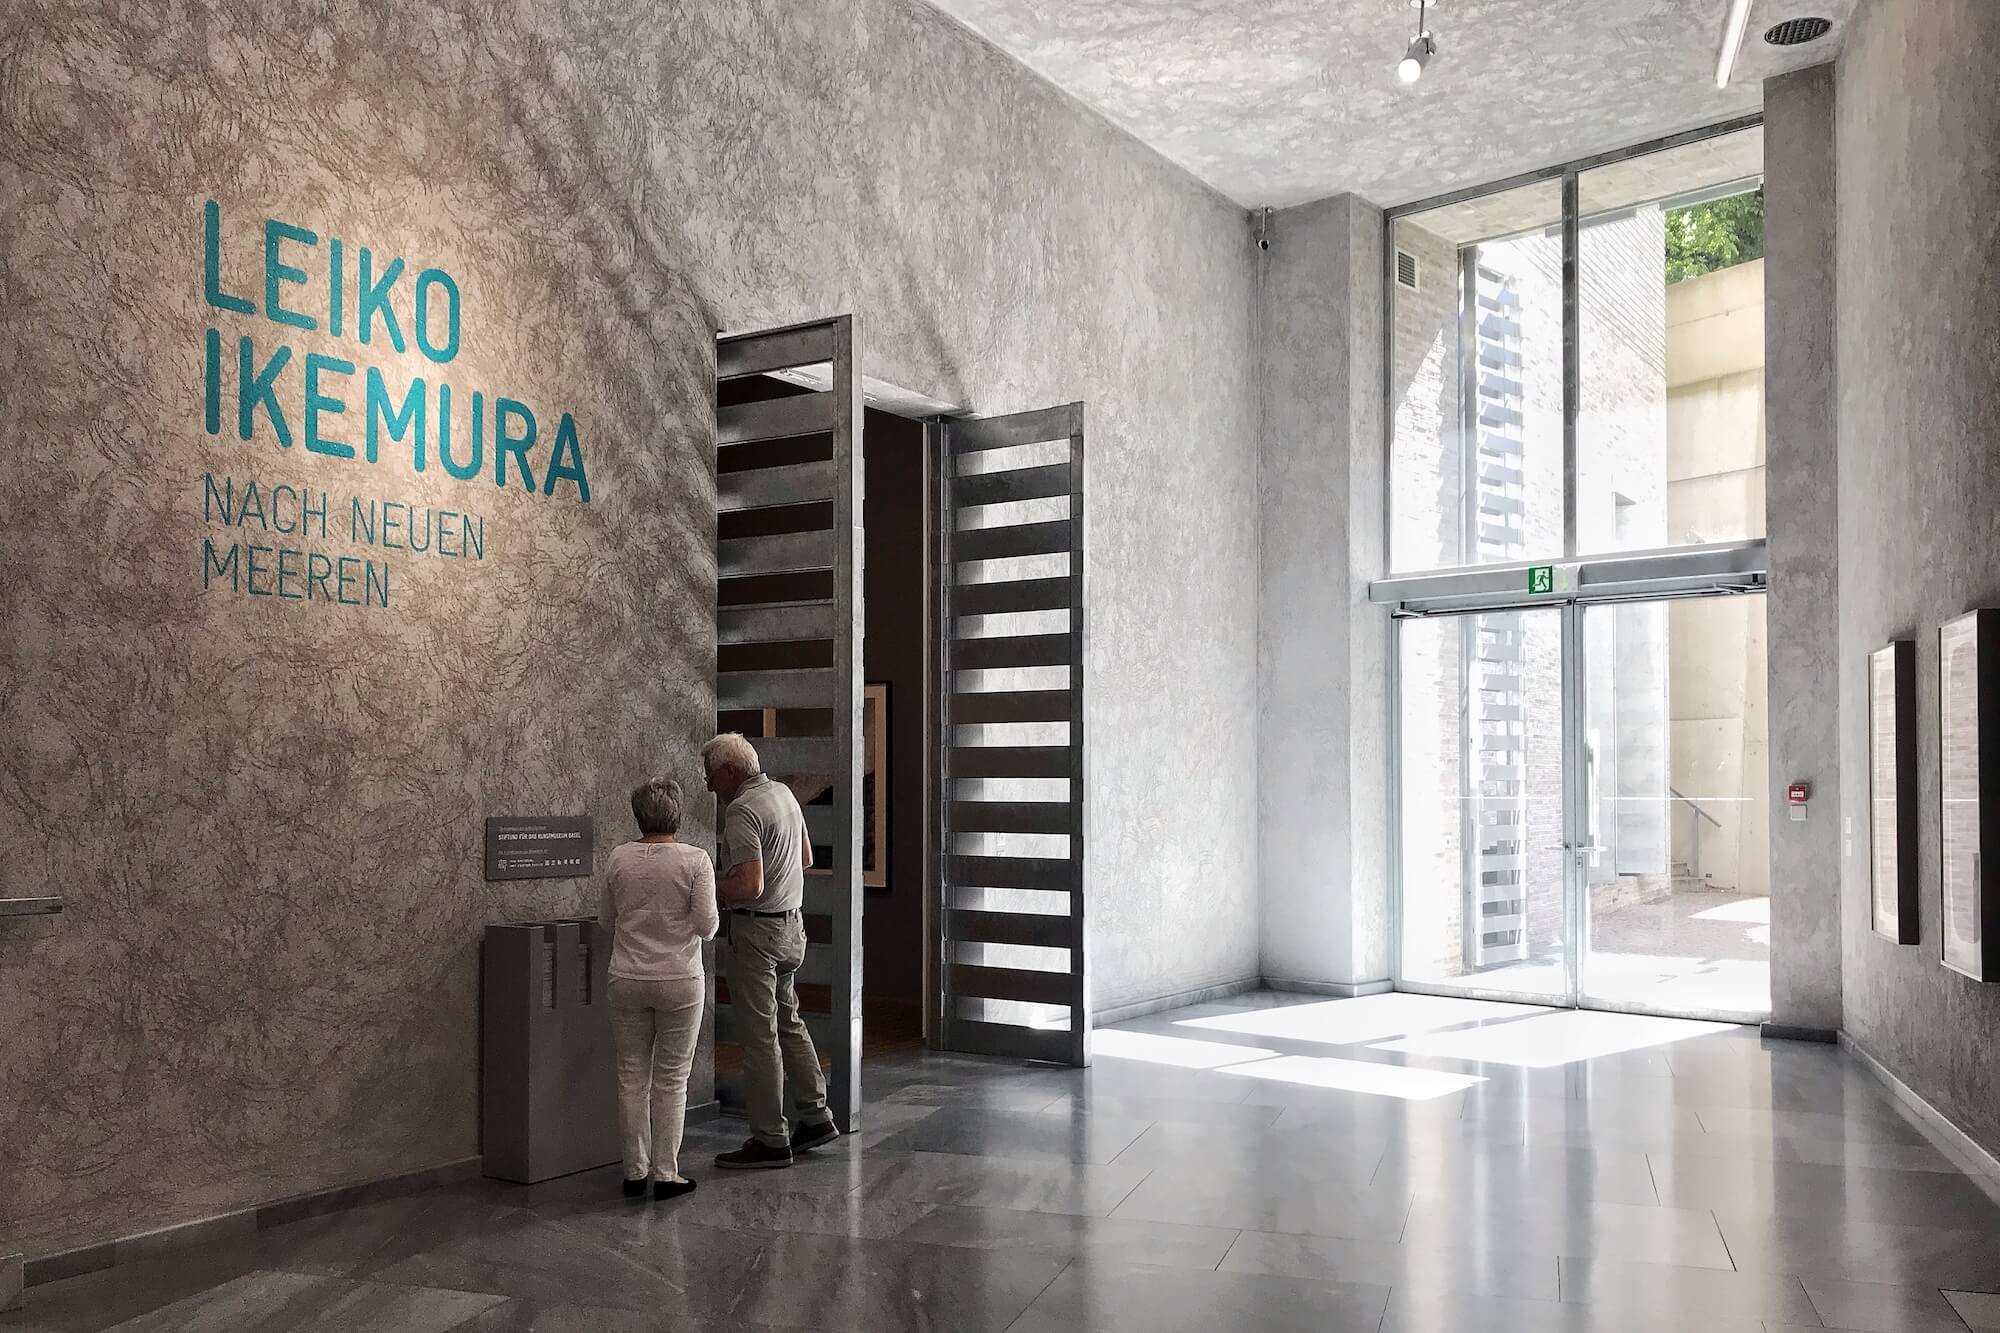 Das Kunstmuseum Basel widmet der japanisch-schweizerischen Künstlerin Leiko Ikemura mit der Ausstellung "Nach neuen Meeren" eine Retrospektive.